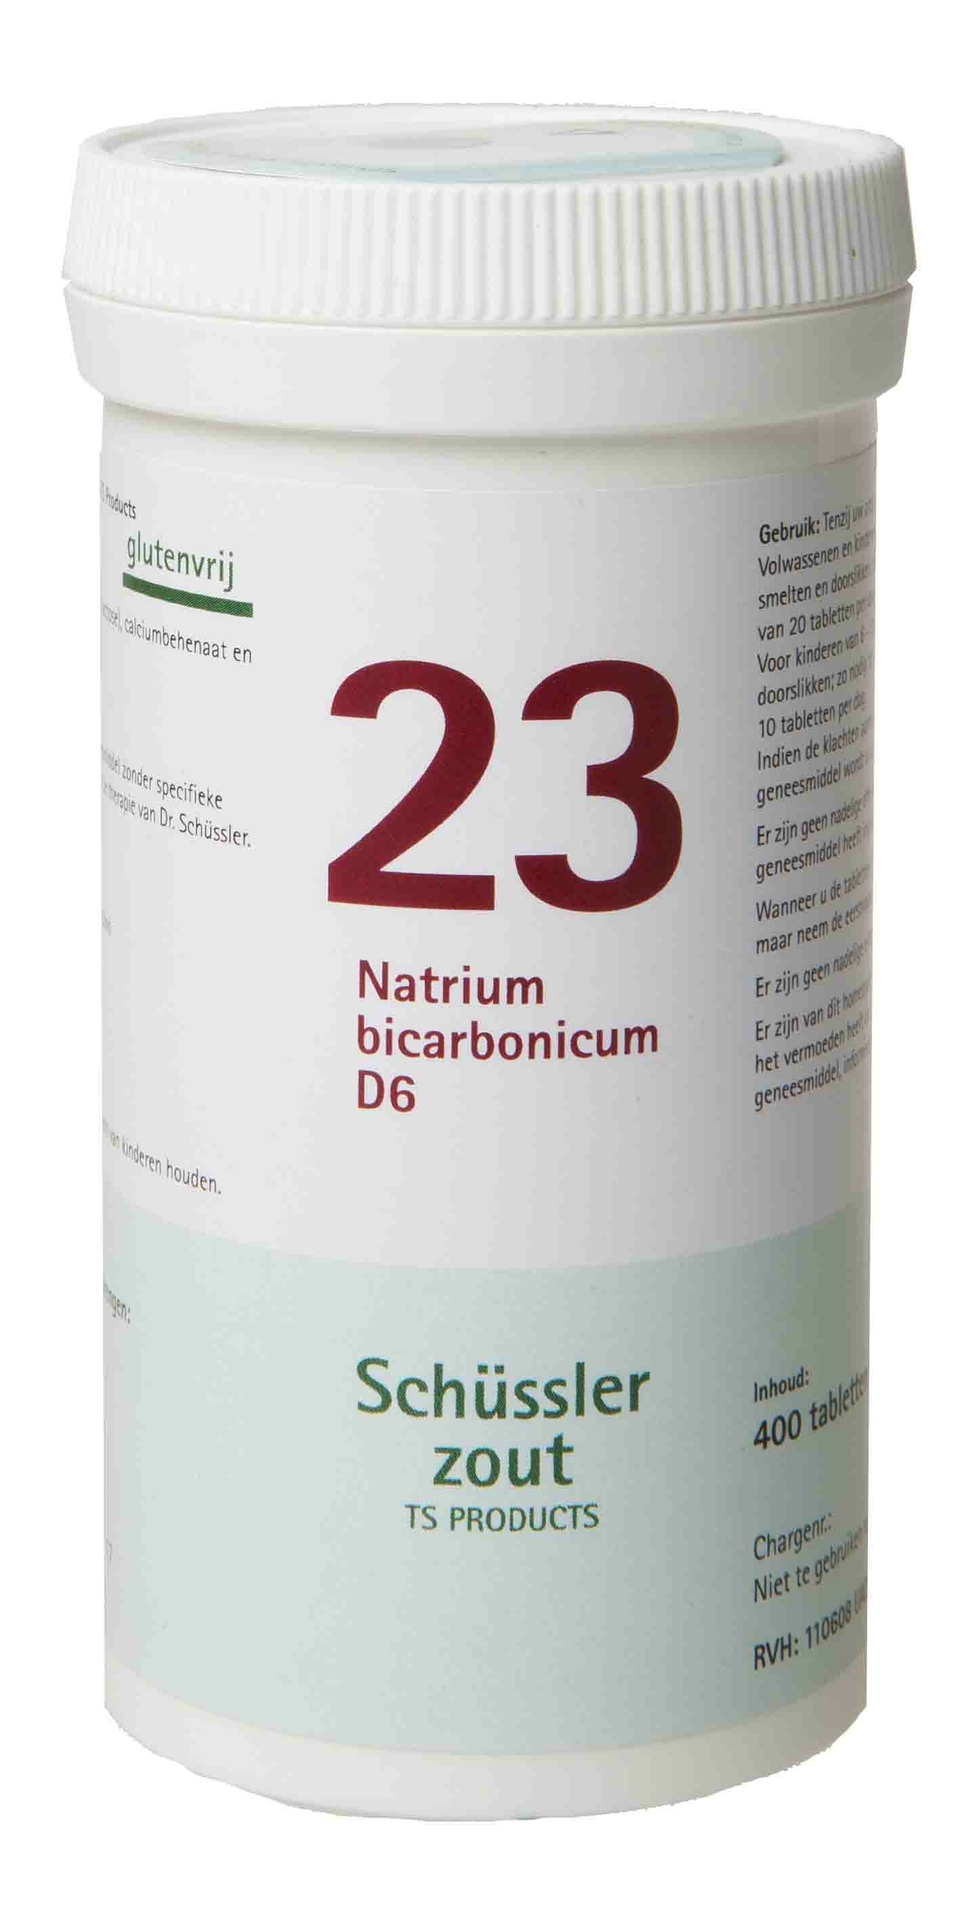 Natrium bicarbonicum 